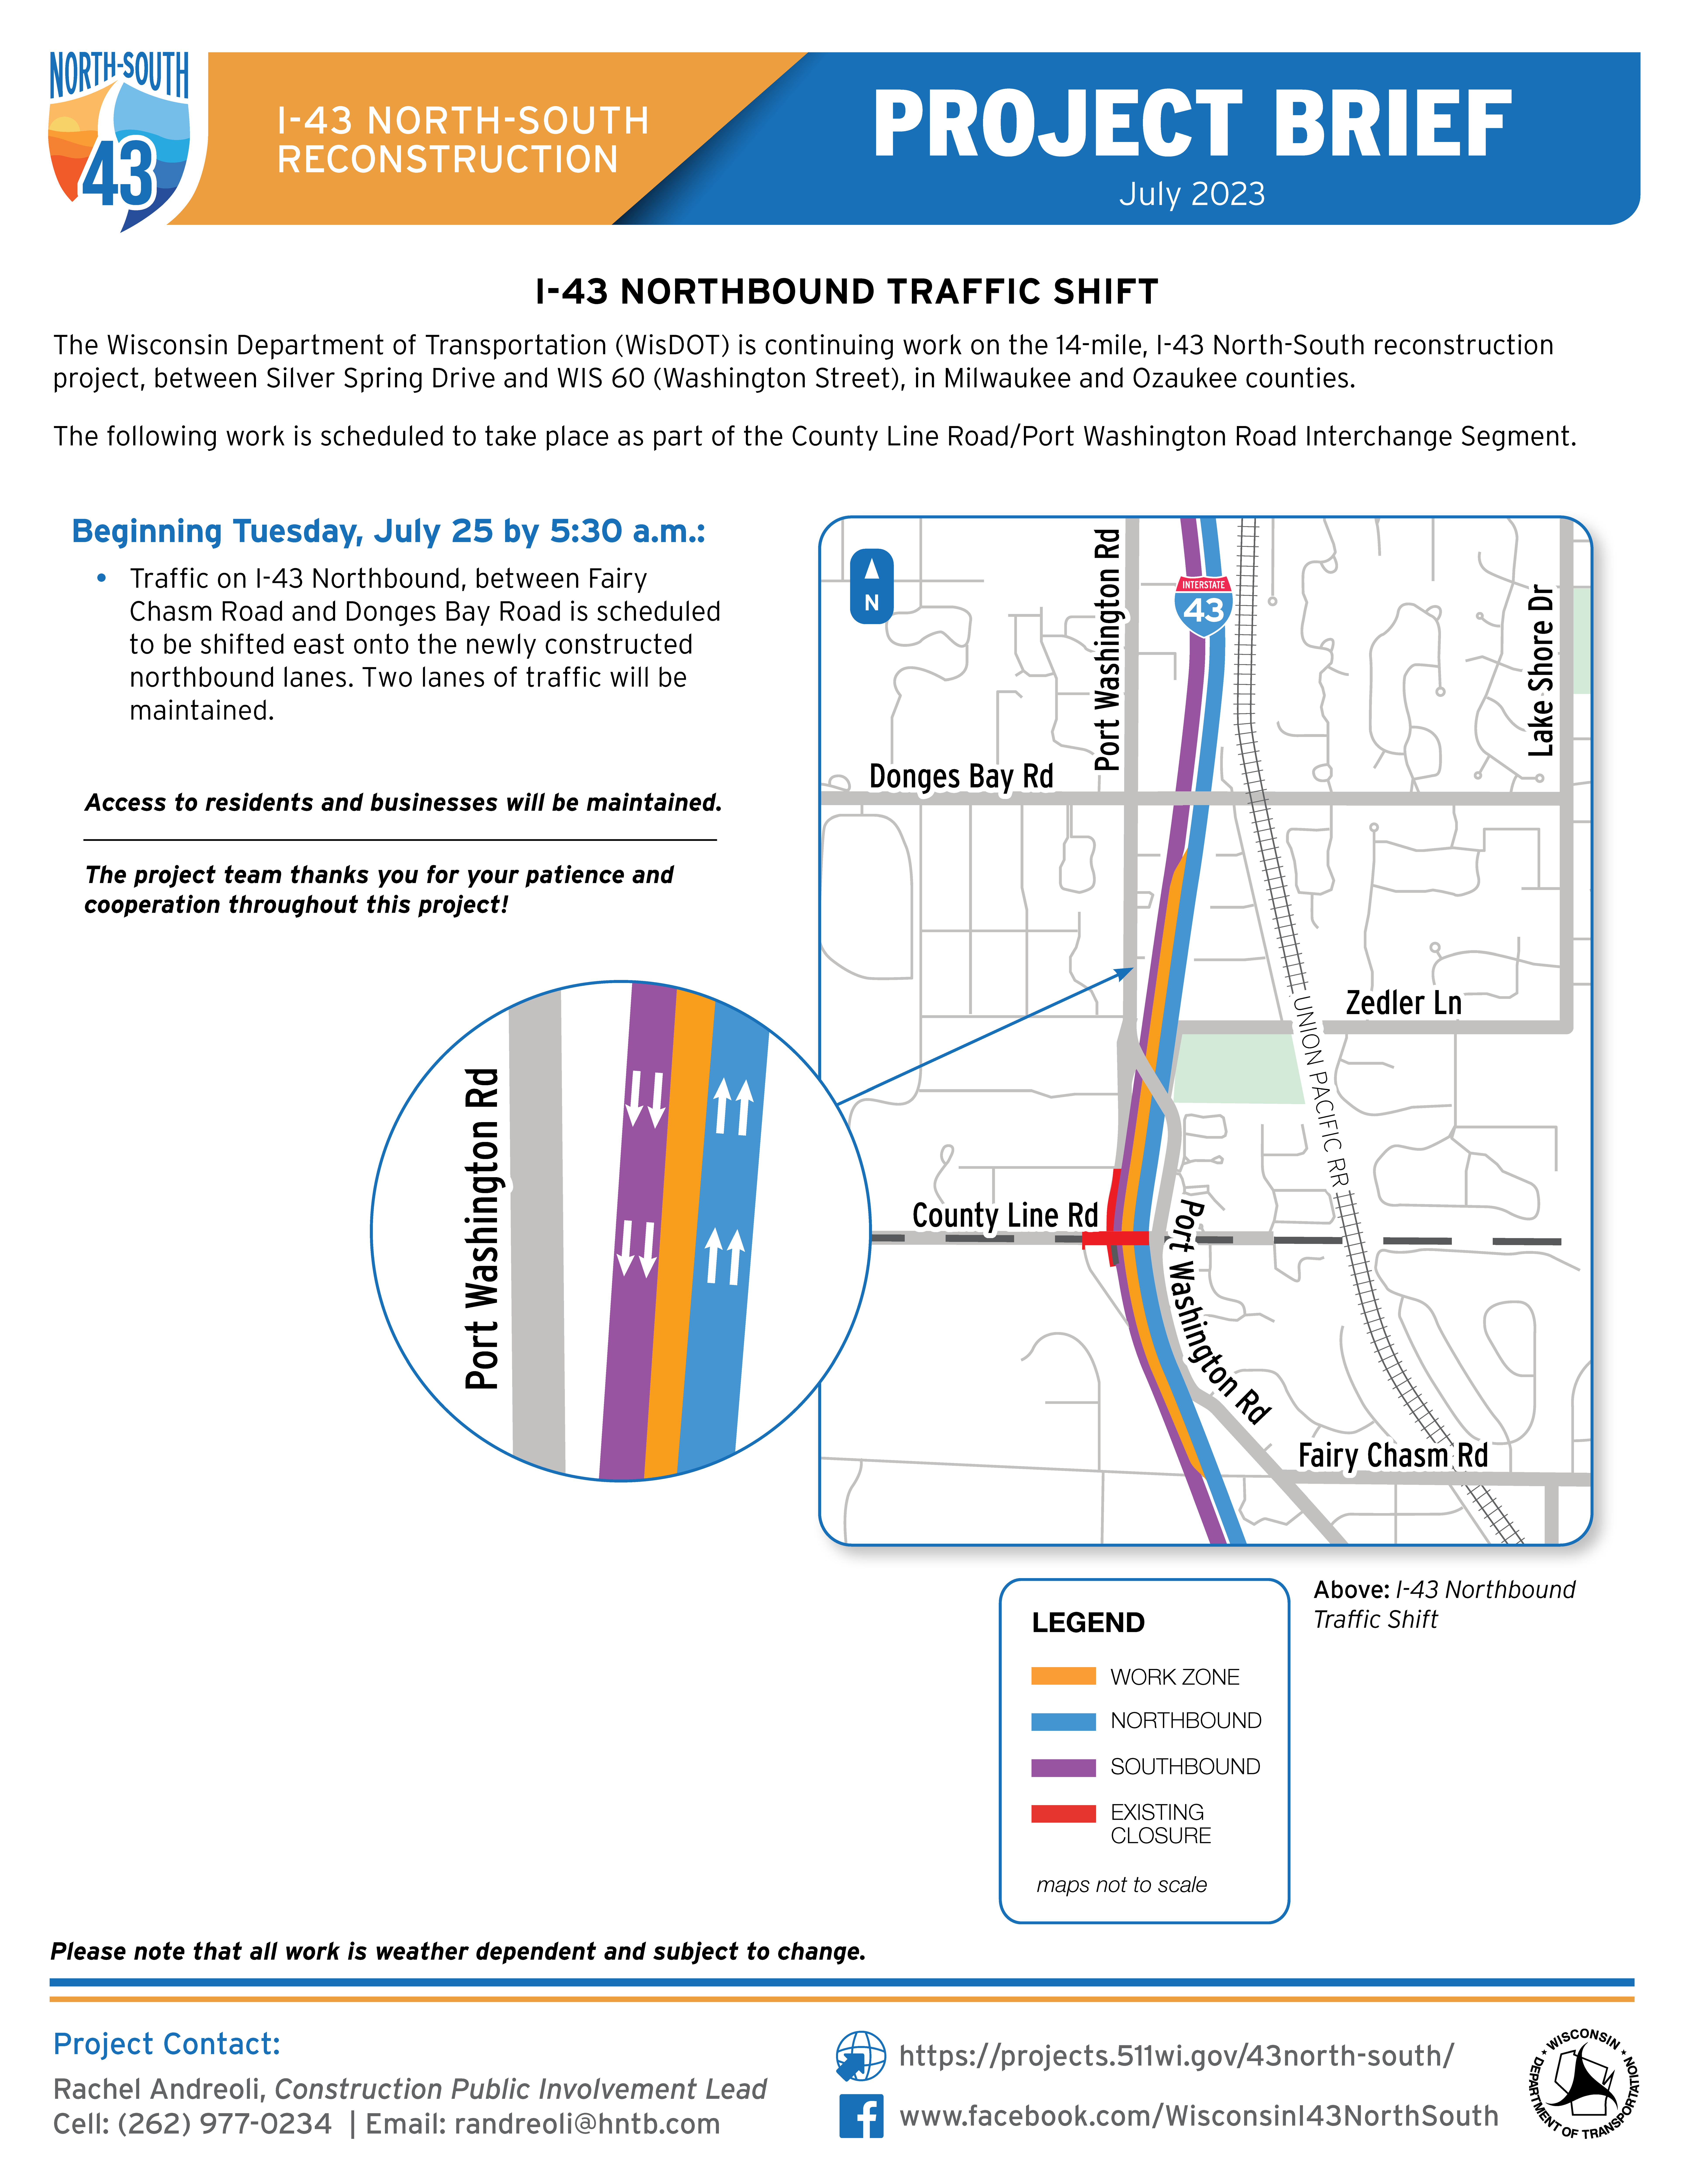 July 25, I-43 Northbound Traffic Shift